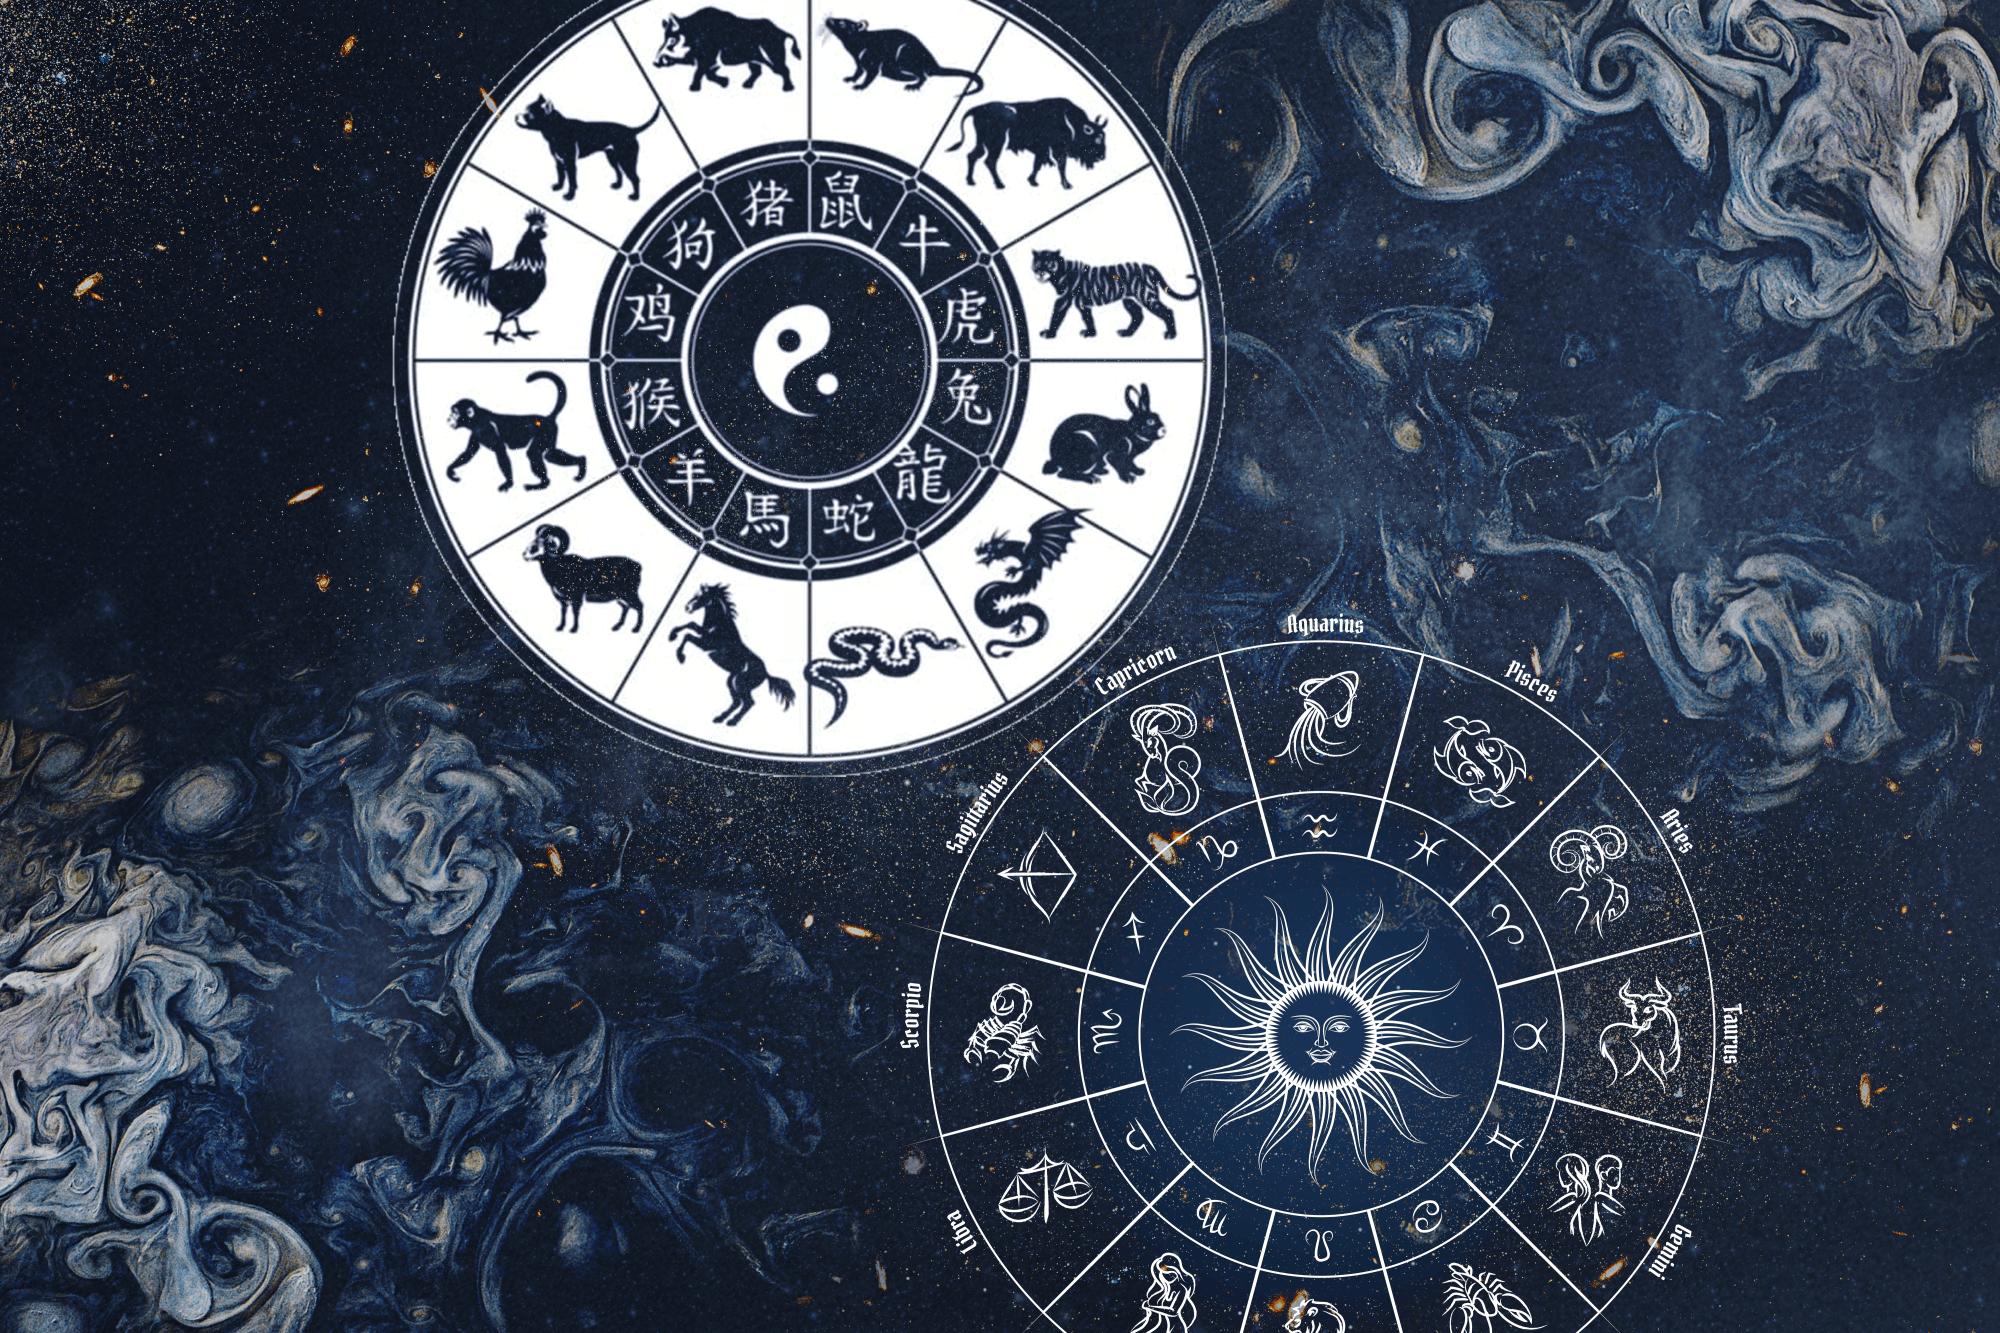 El zodiaco chino y occidental tienen siglos de tradición tras de sí.